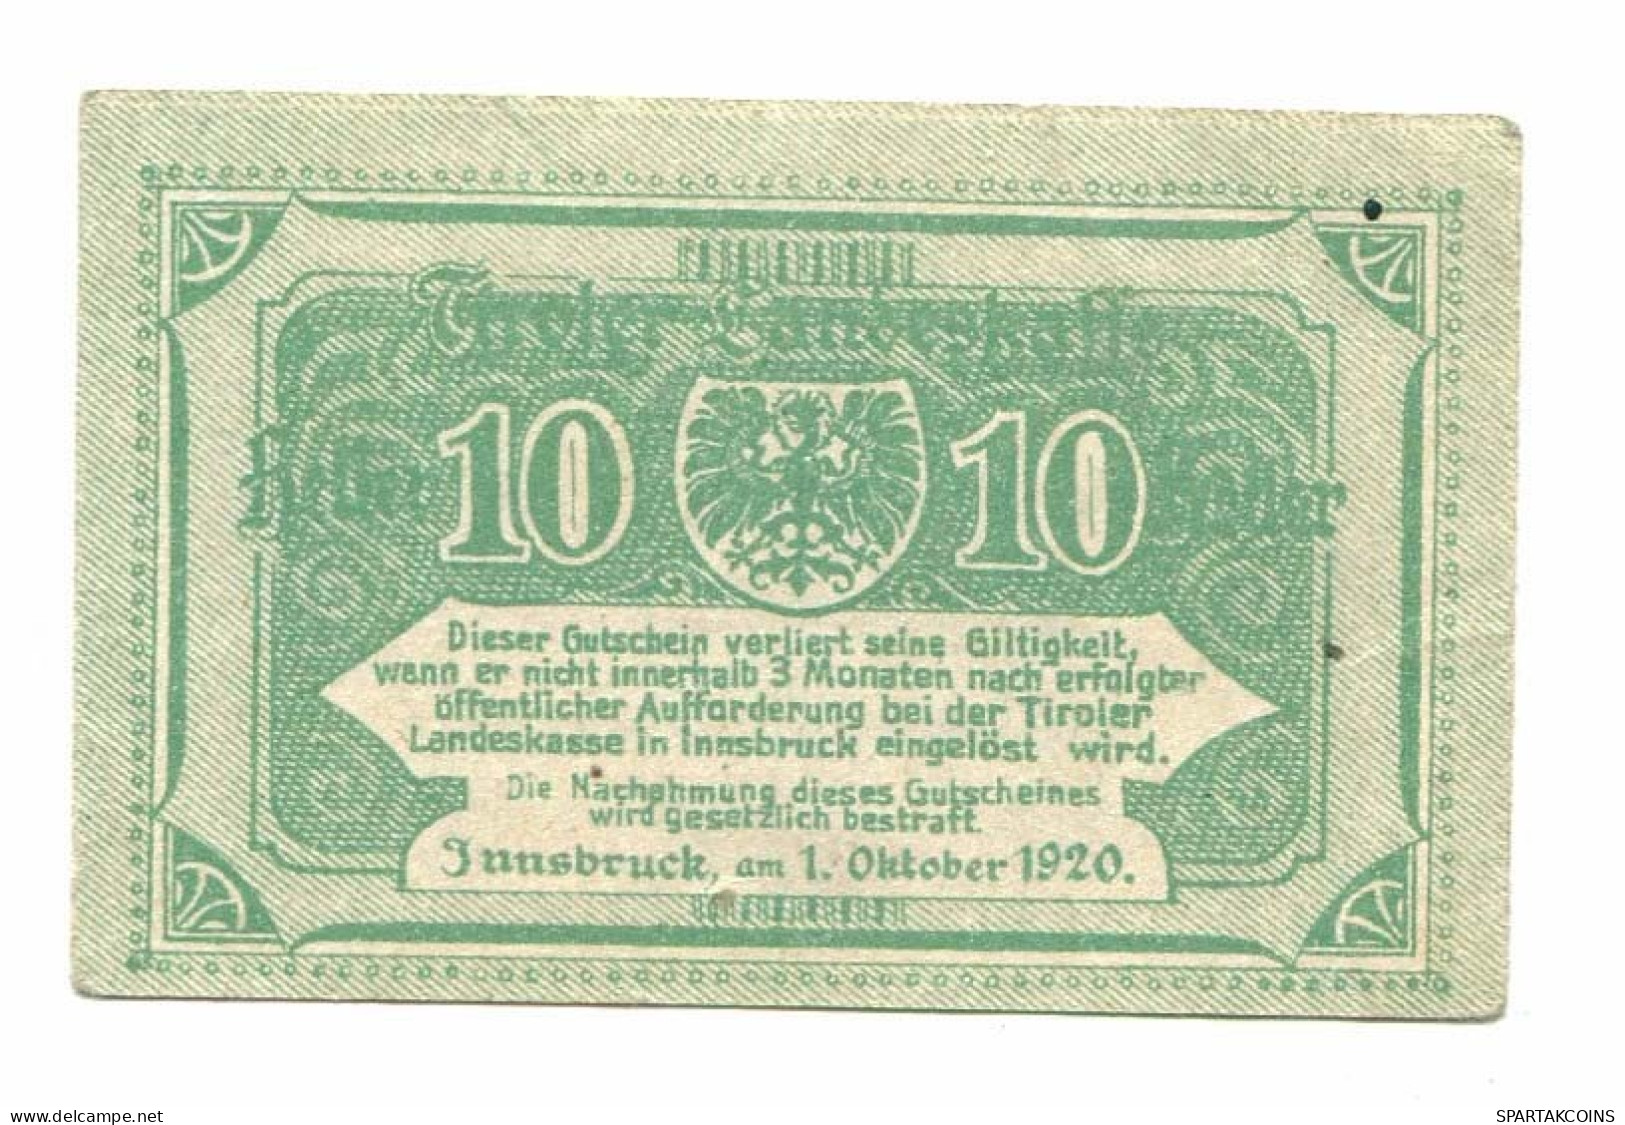 10 Heller 1920 TIROLER LANDESKASSE TIRROL Österreich UNC Notgeld Papiergeld Banknote #P10772 - Lokale Ausgaben